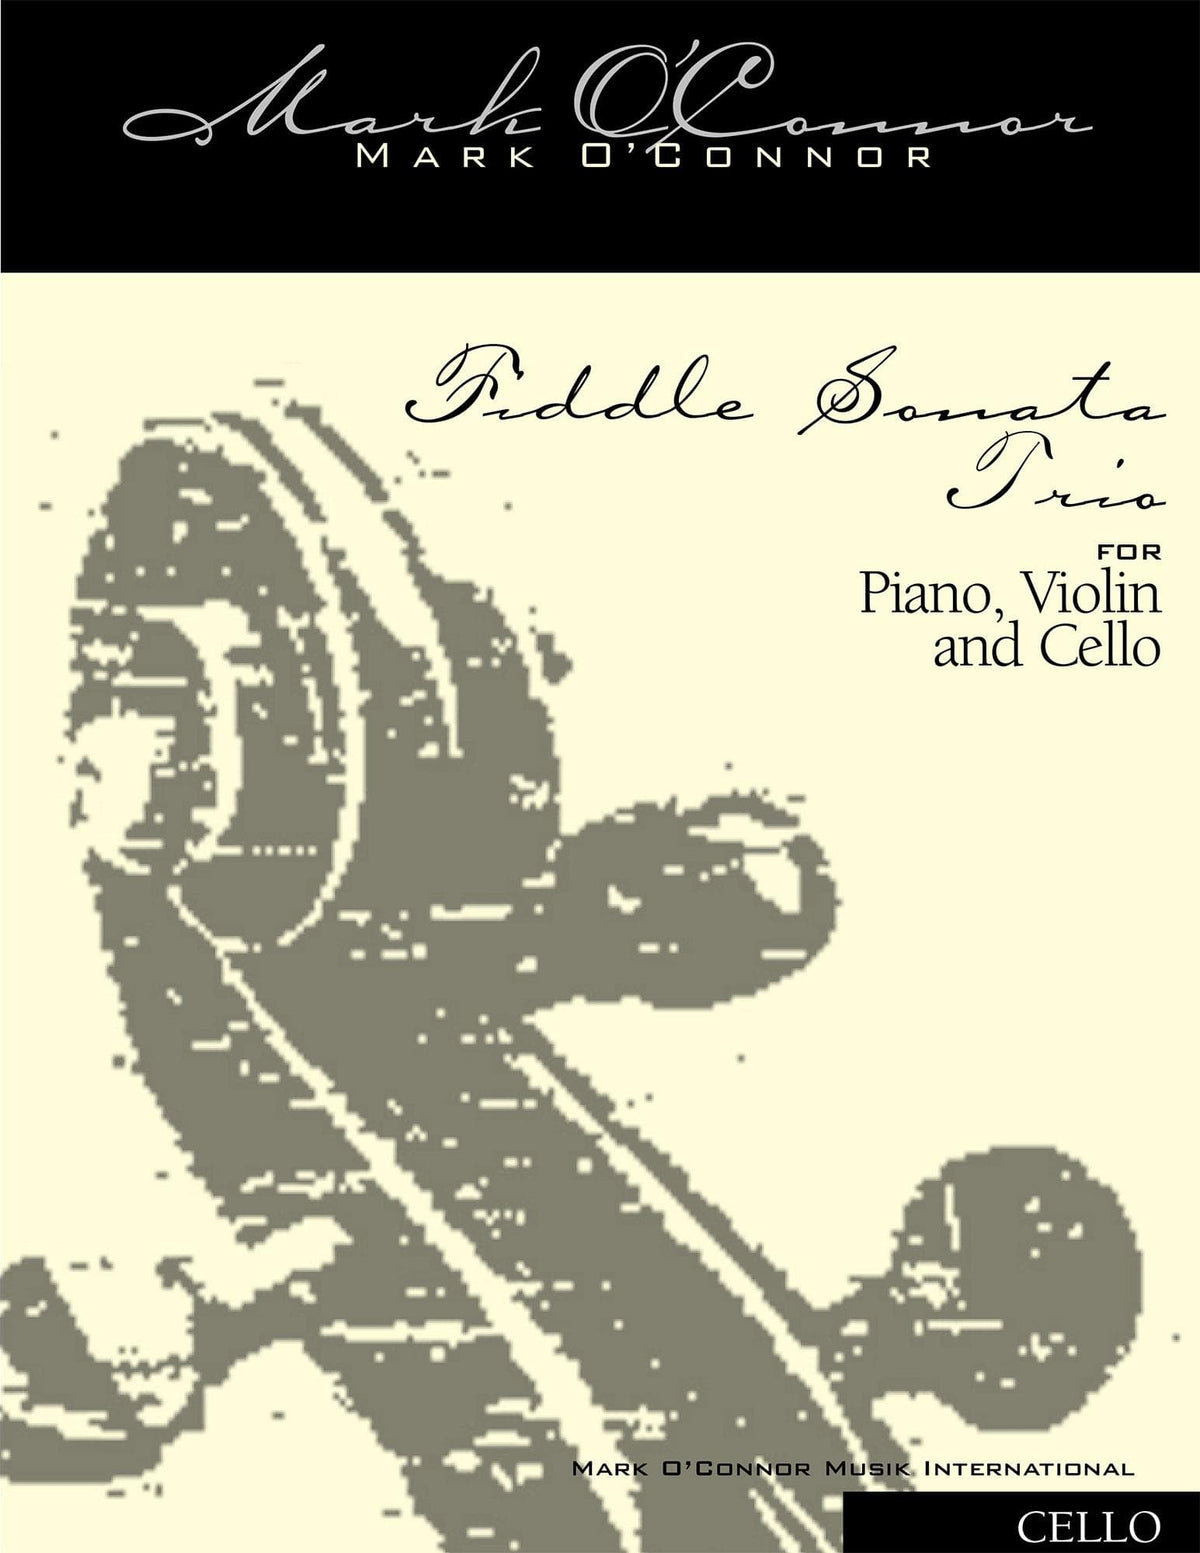 O'Connor, Mark - Fiddle Sonata Trio for Piano, Violin, and Cello - Cello - Digital Download